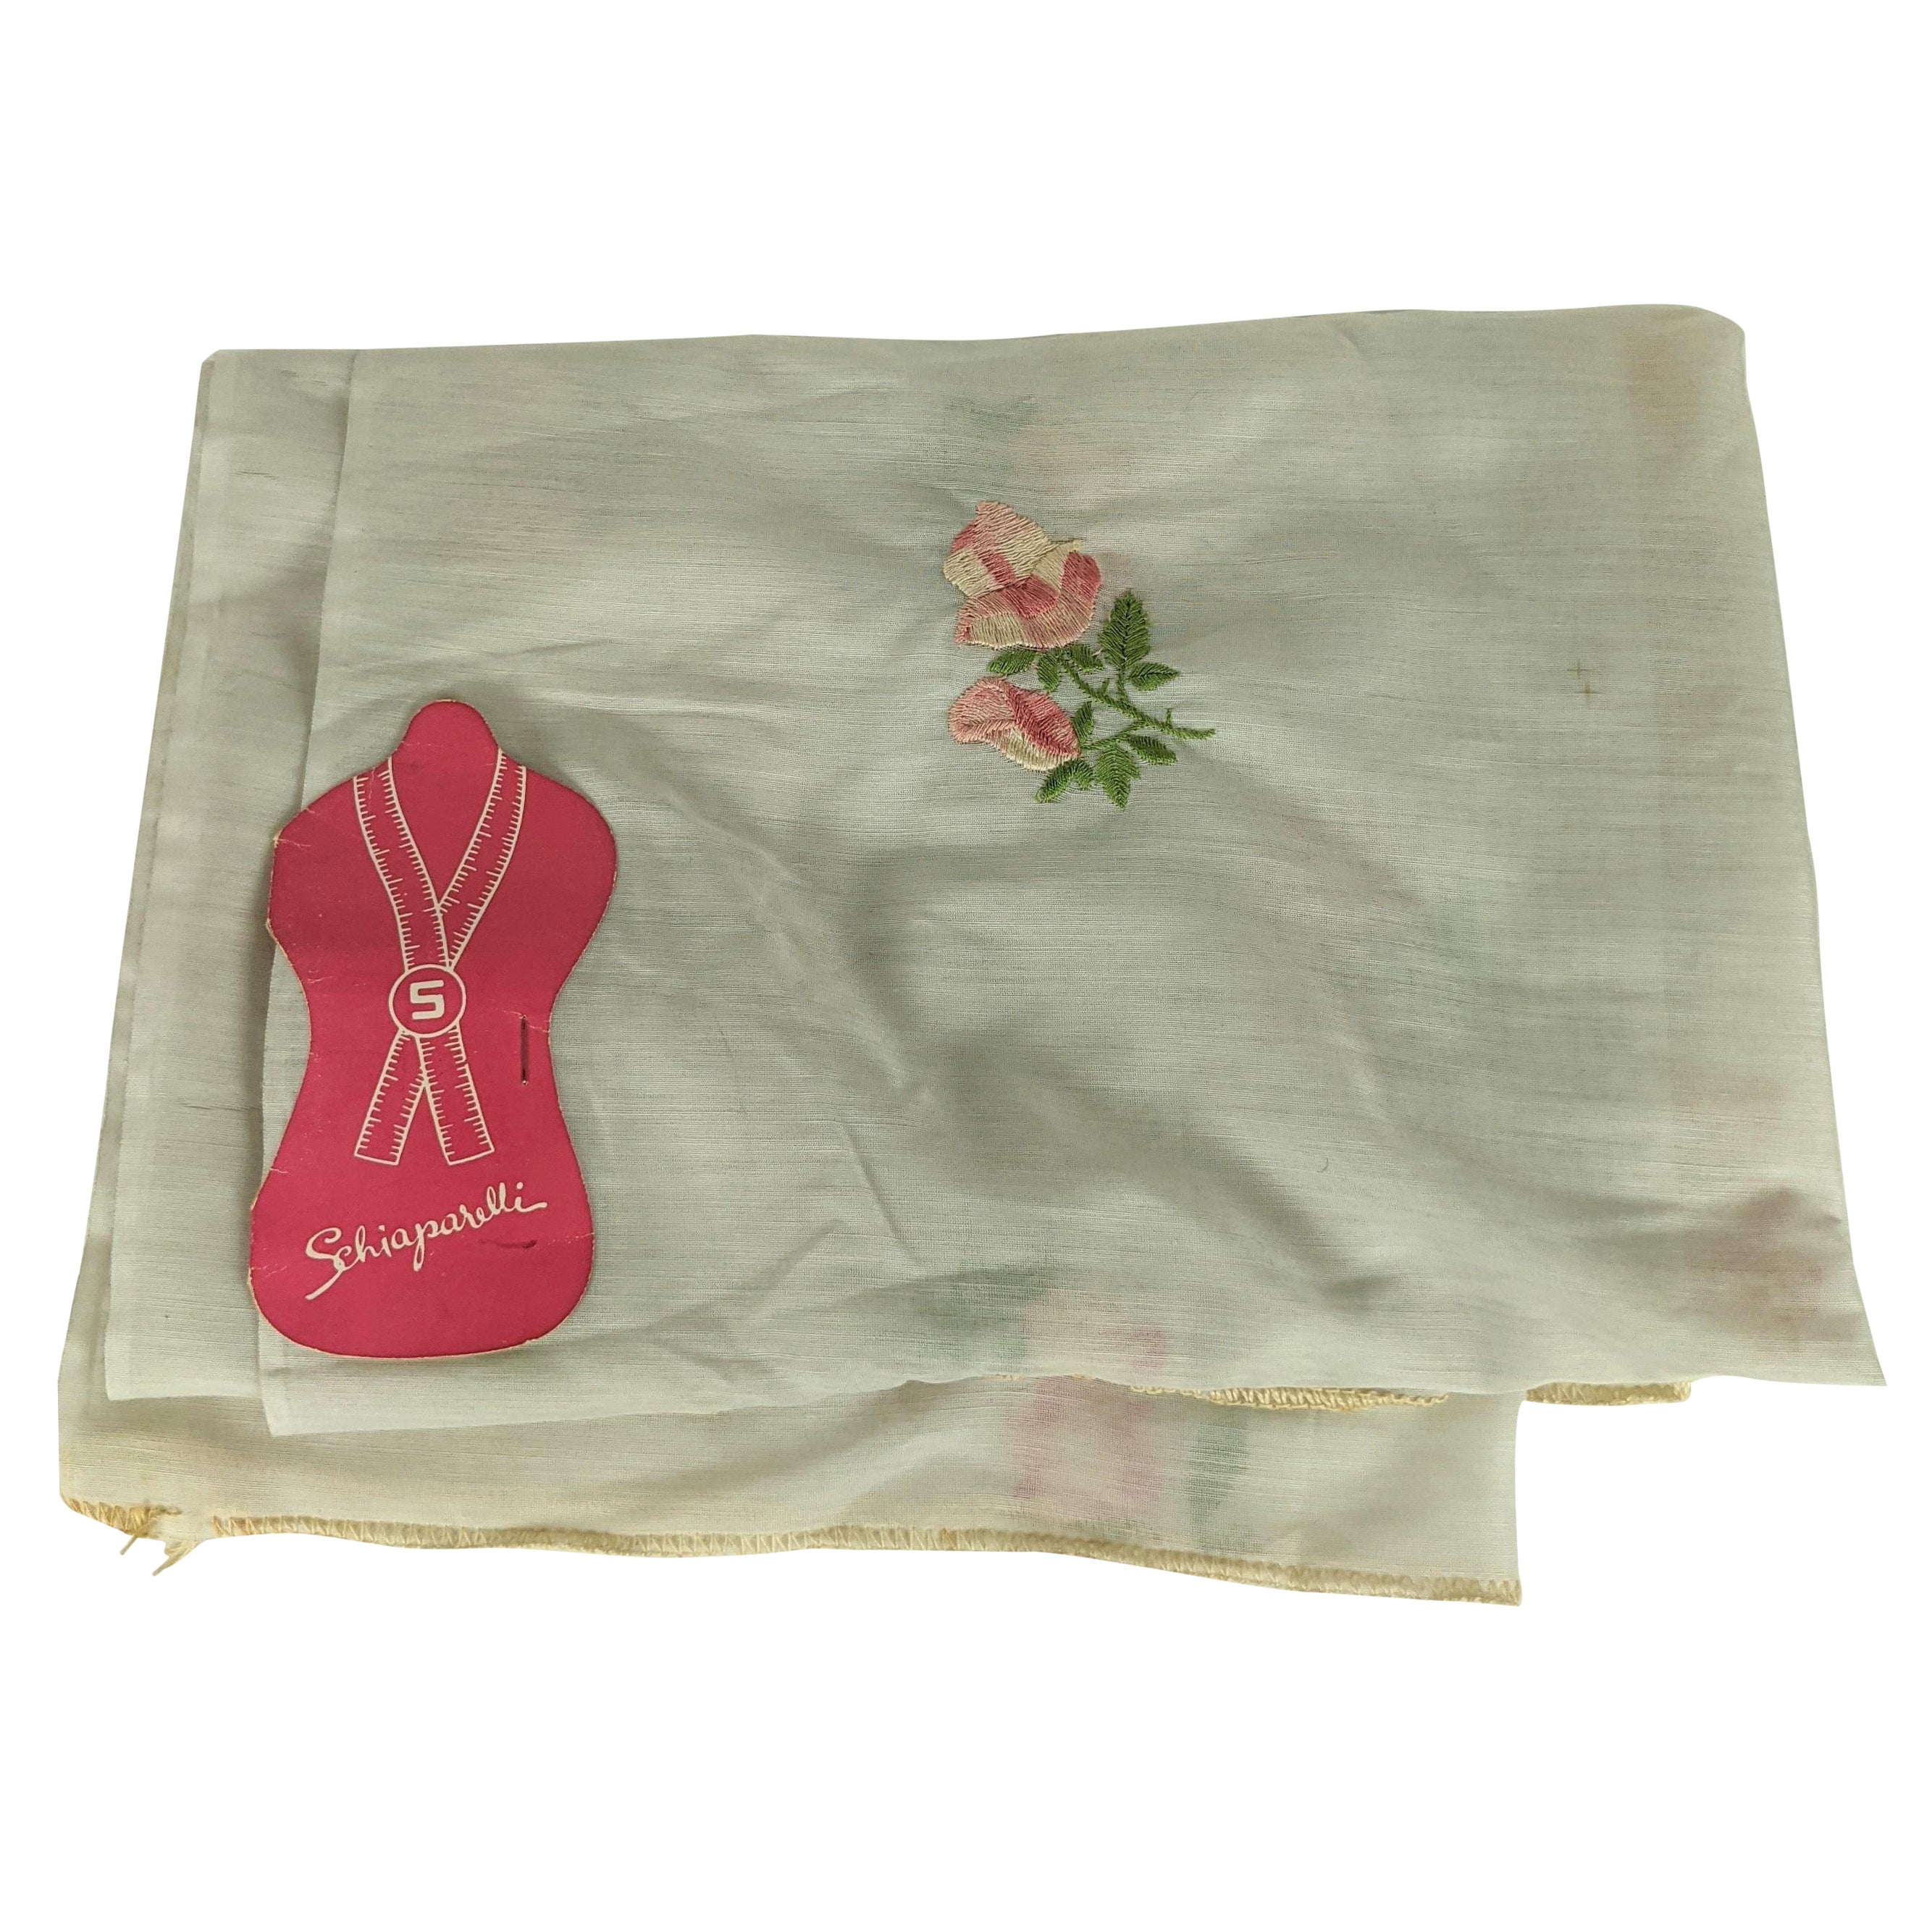 Schiaparelli Sample Fabric "Rose de Printemps"